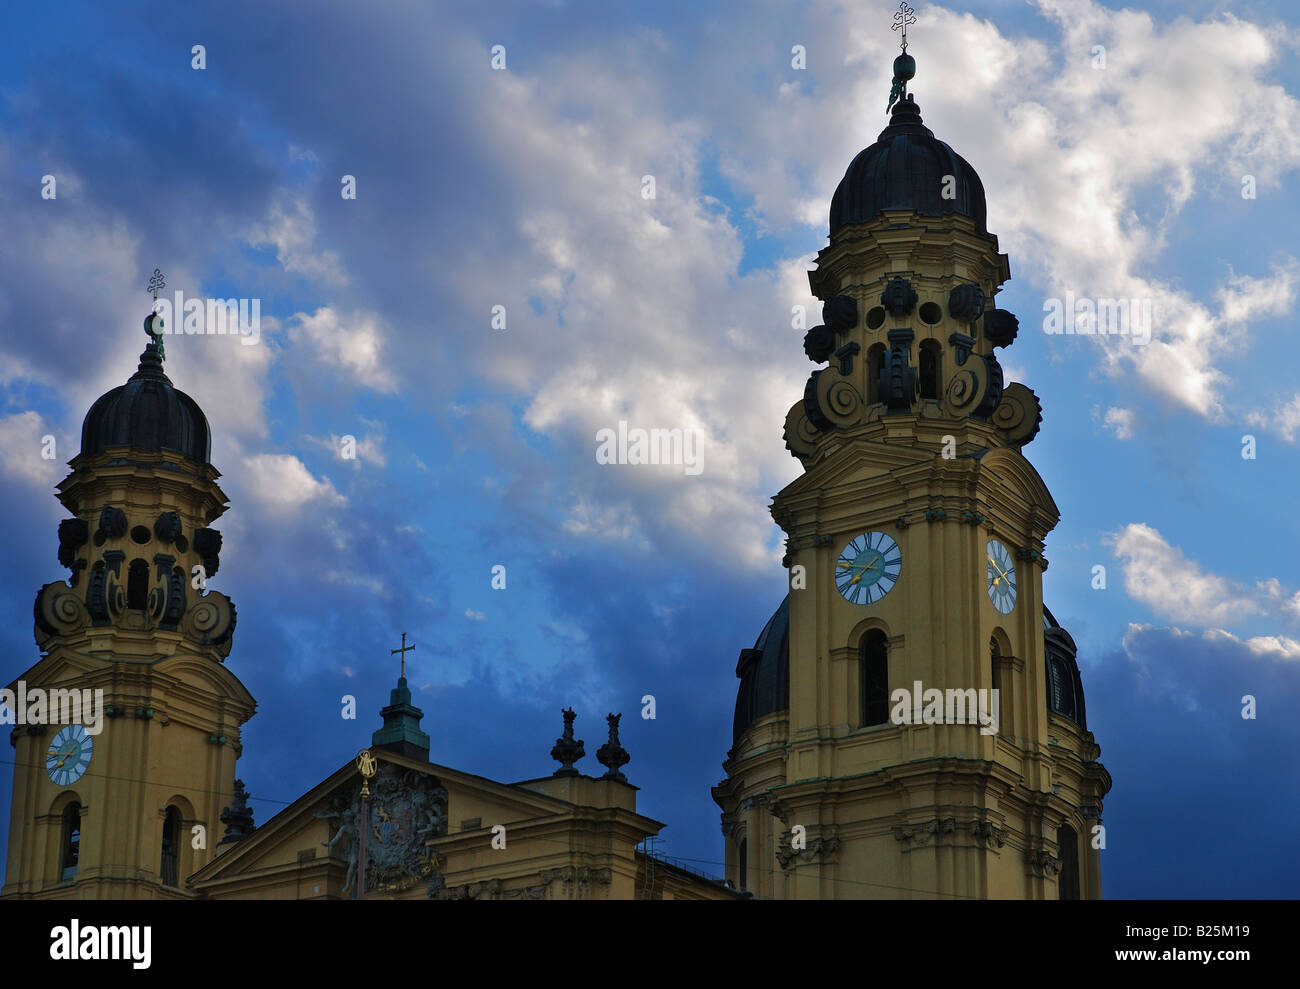 Europa, Deutschland, Bayern, München, Theatinerkirche, Wolken, Himmel, bayerische, Religion, barock Stockfoto